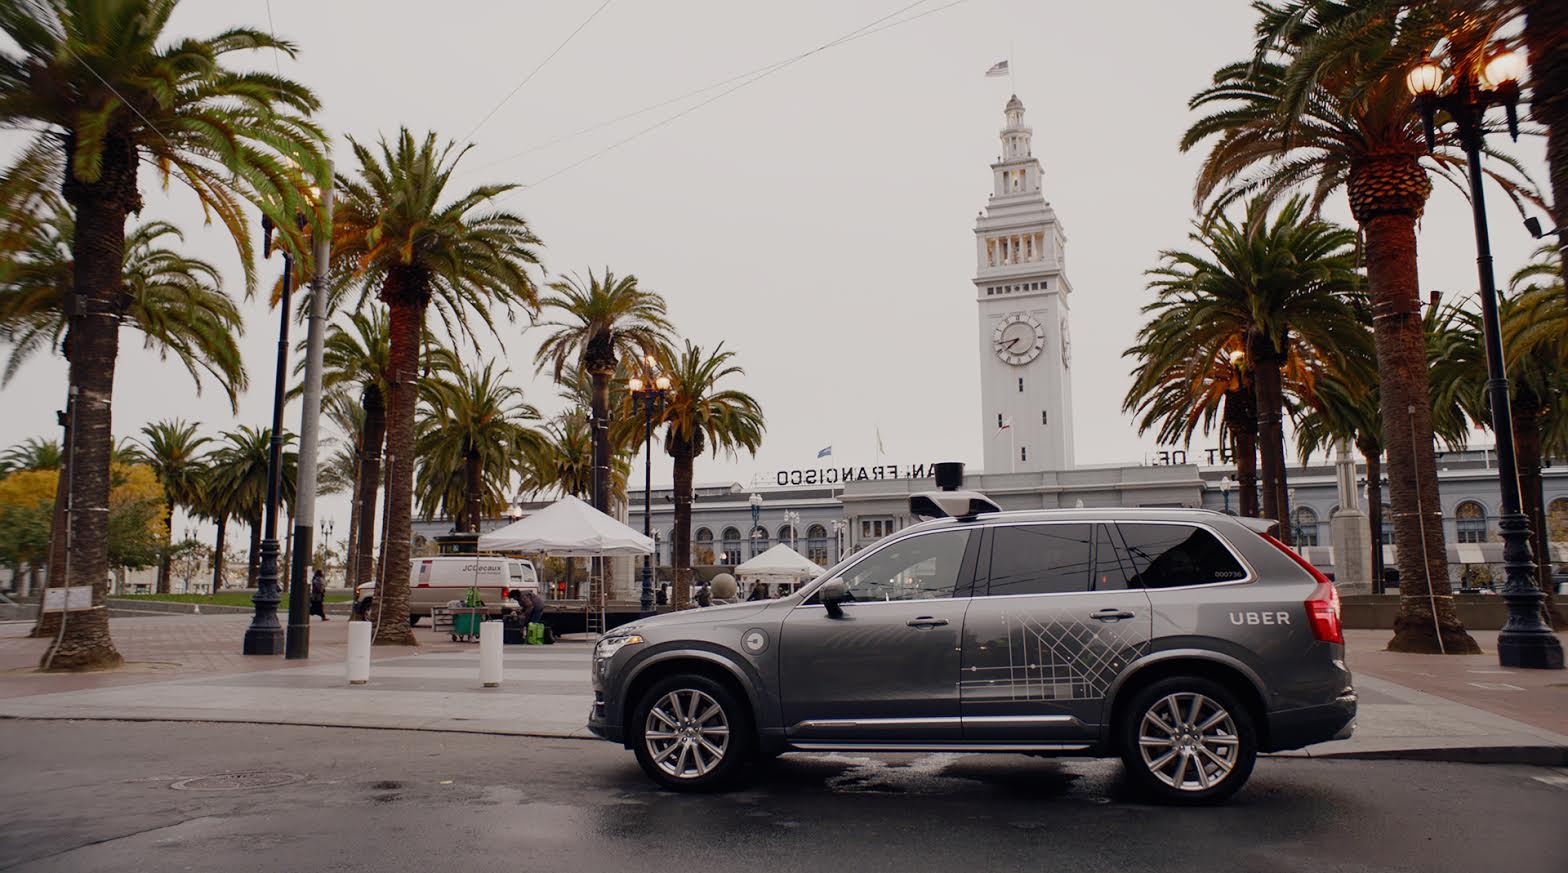 سائقة سيارة Uber الذاتية القيادة كانت تشاهد خدمة Hulu قبل وقوع الحادثة